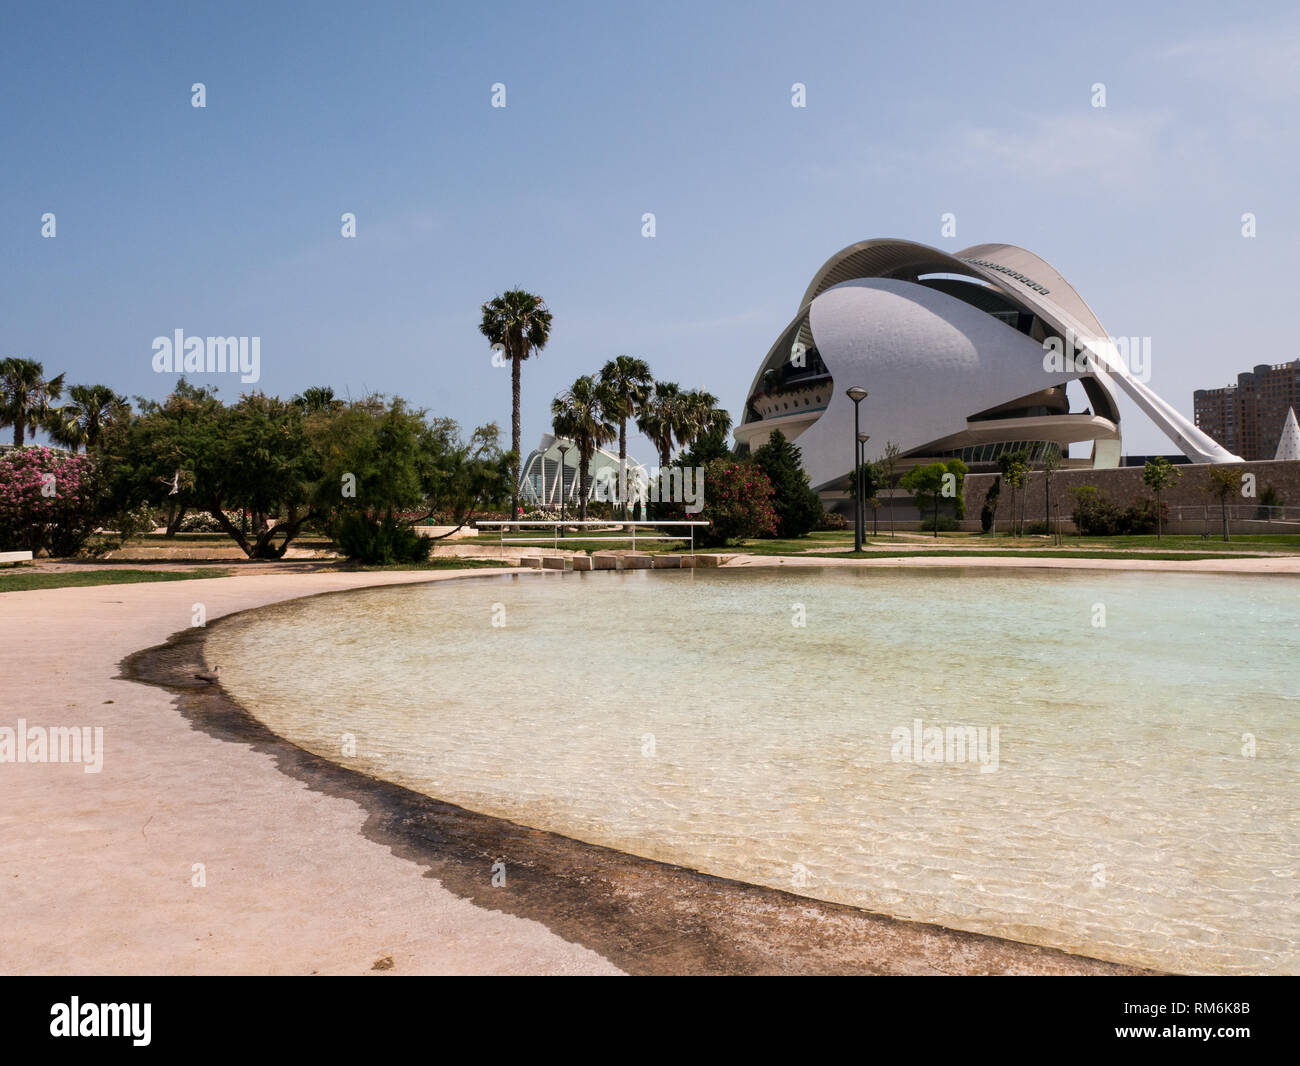 Vue avant de la fantastique ville de science et d'art de Valence, Espagne Banque D'Images